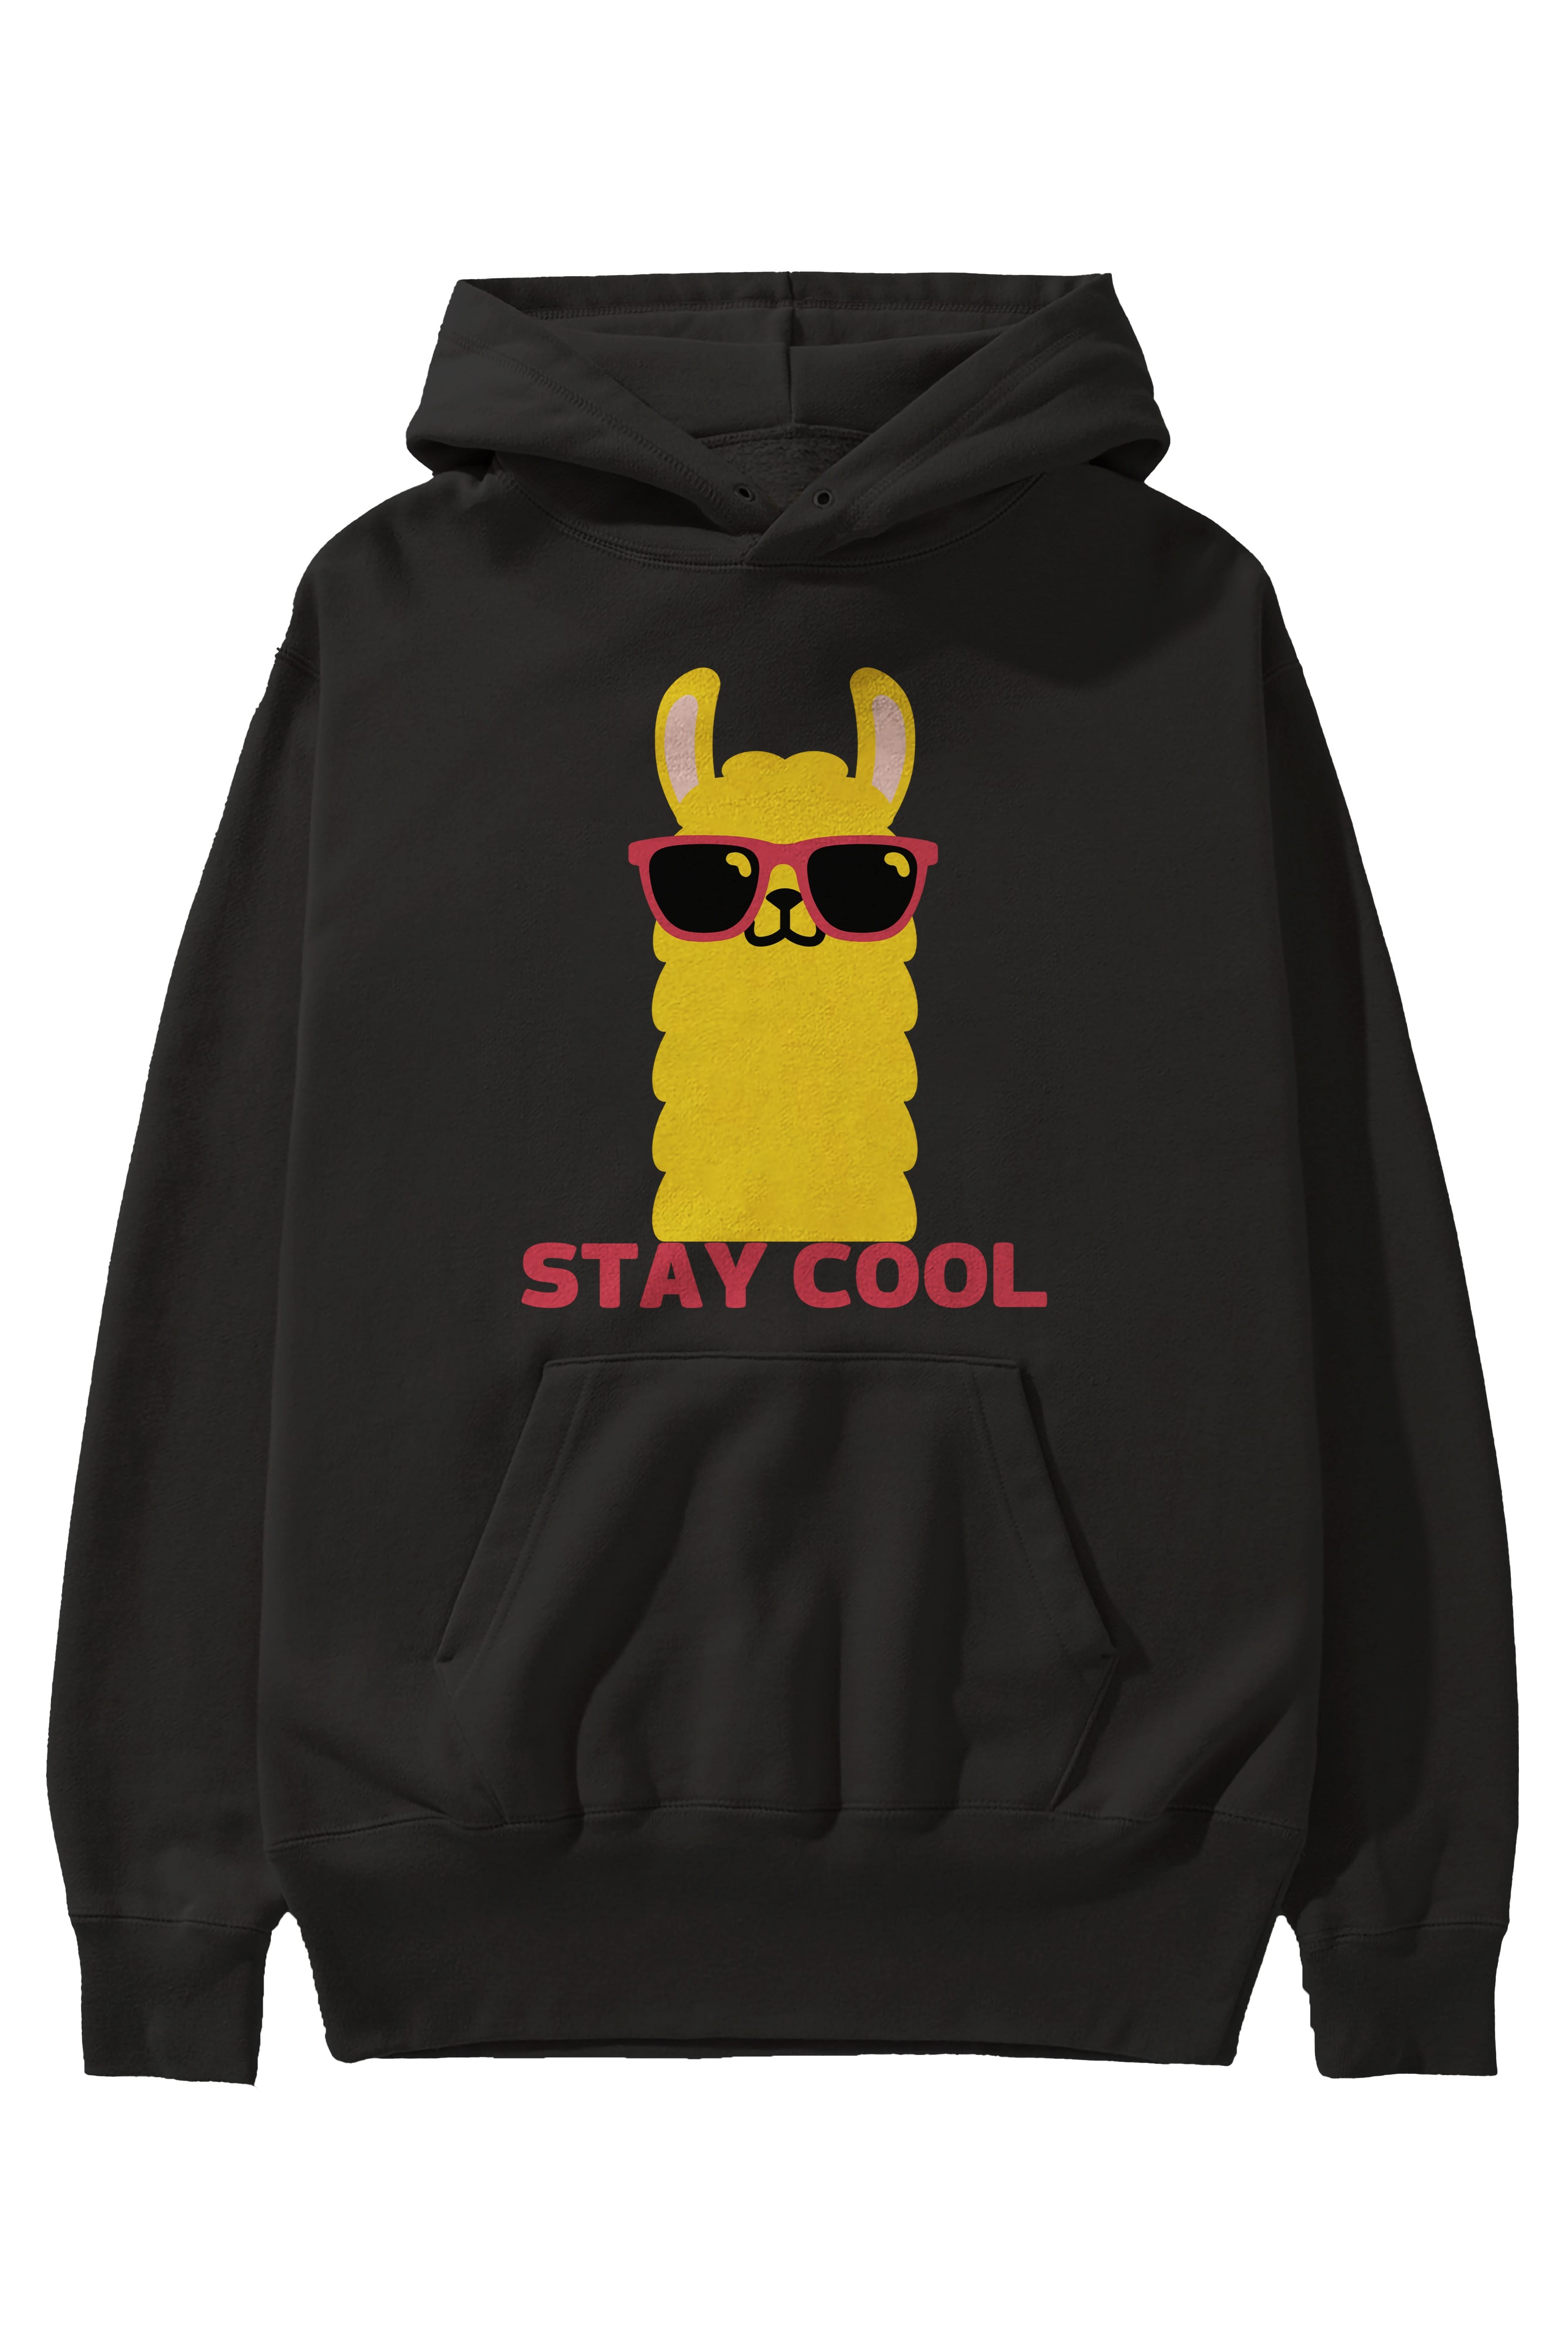 Stay Cool Yazılı Lama Ön Baskılı Oversize Hoodie Kapüşonlu Sweatshirt Erkek Kadın Unisex